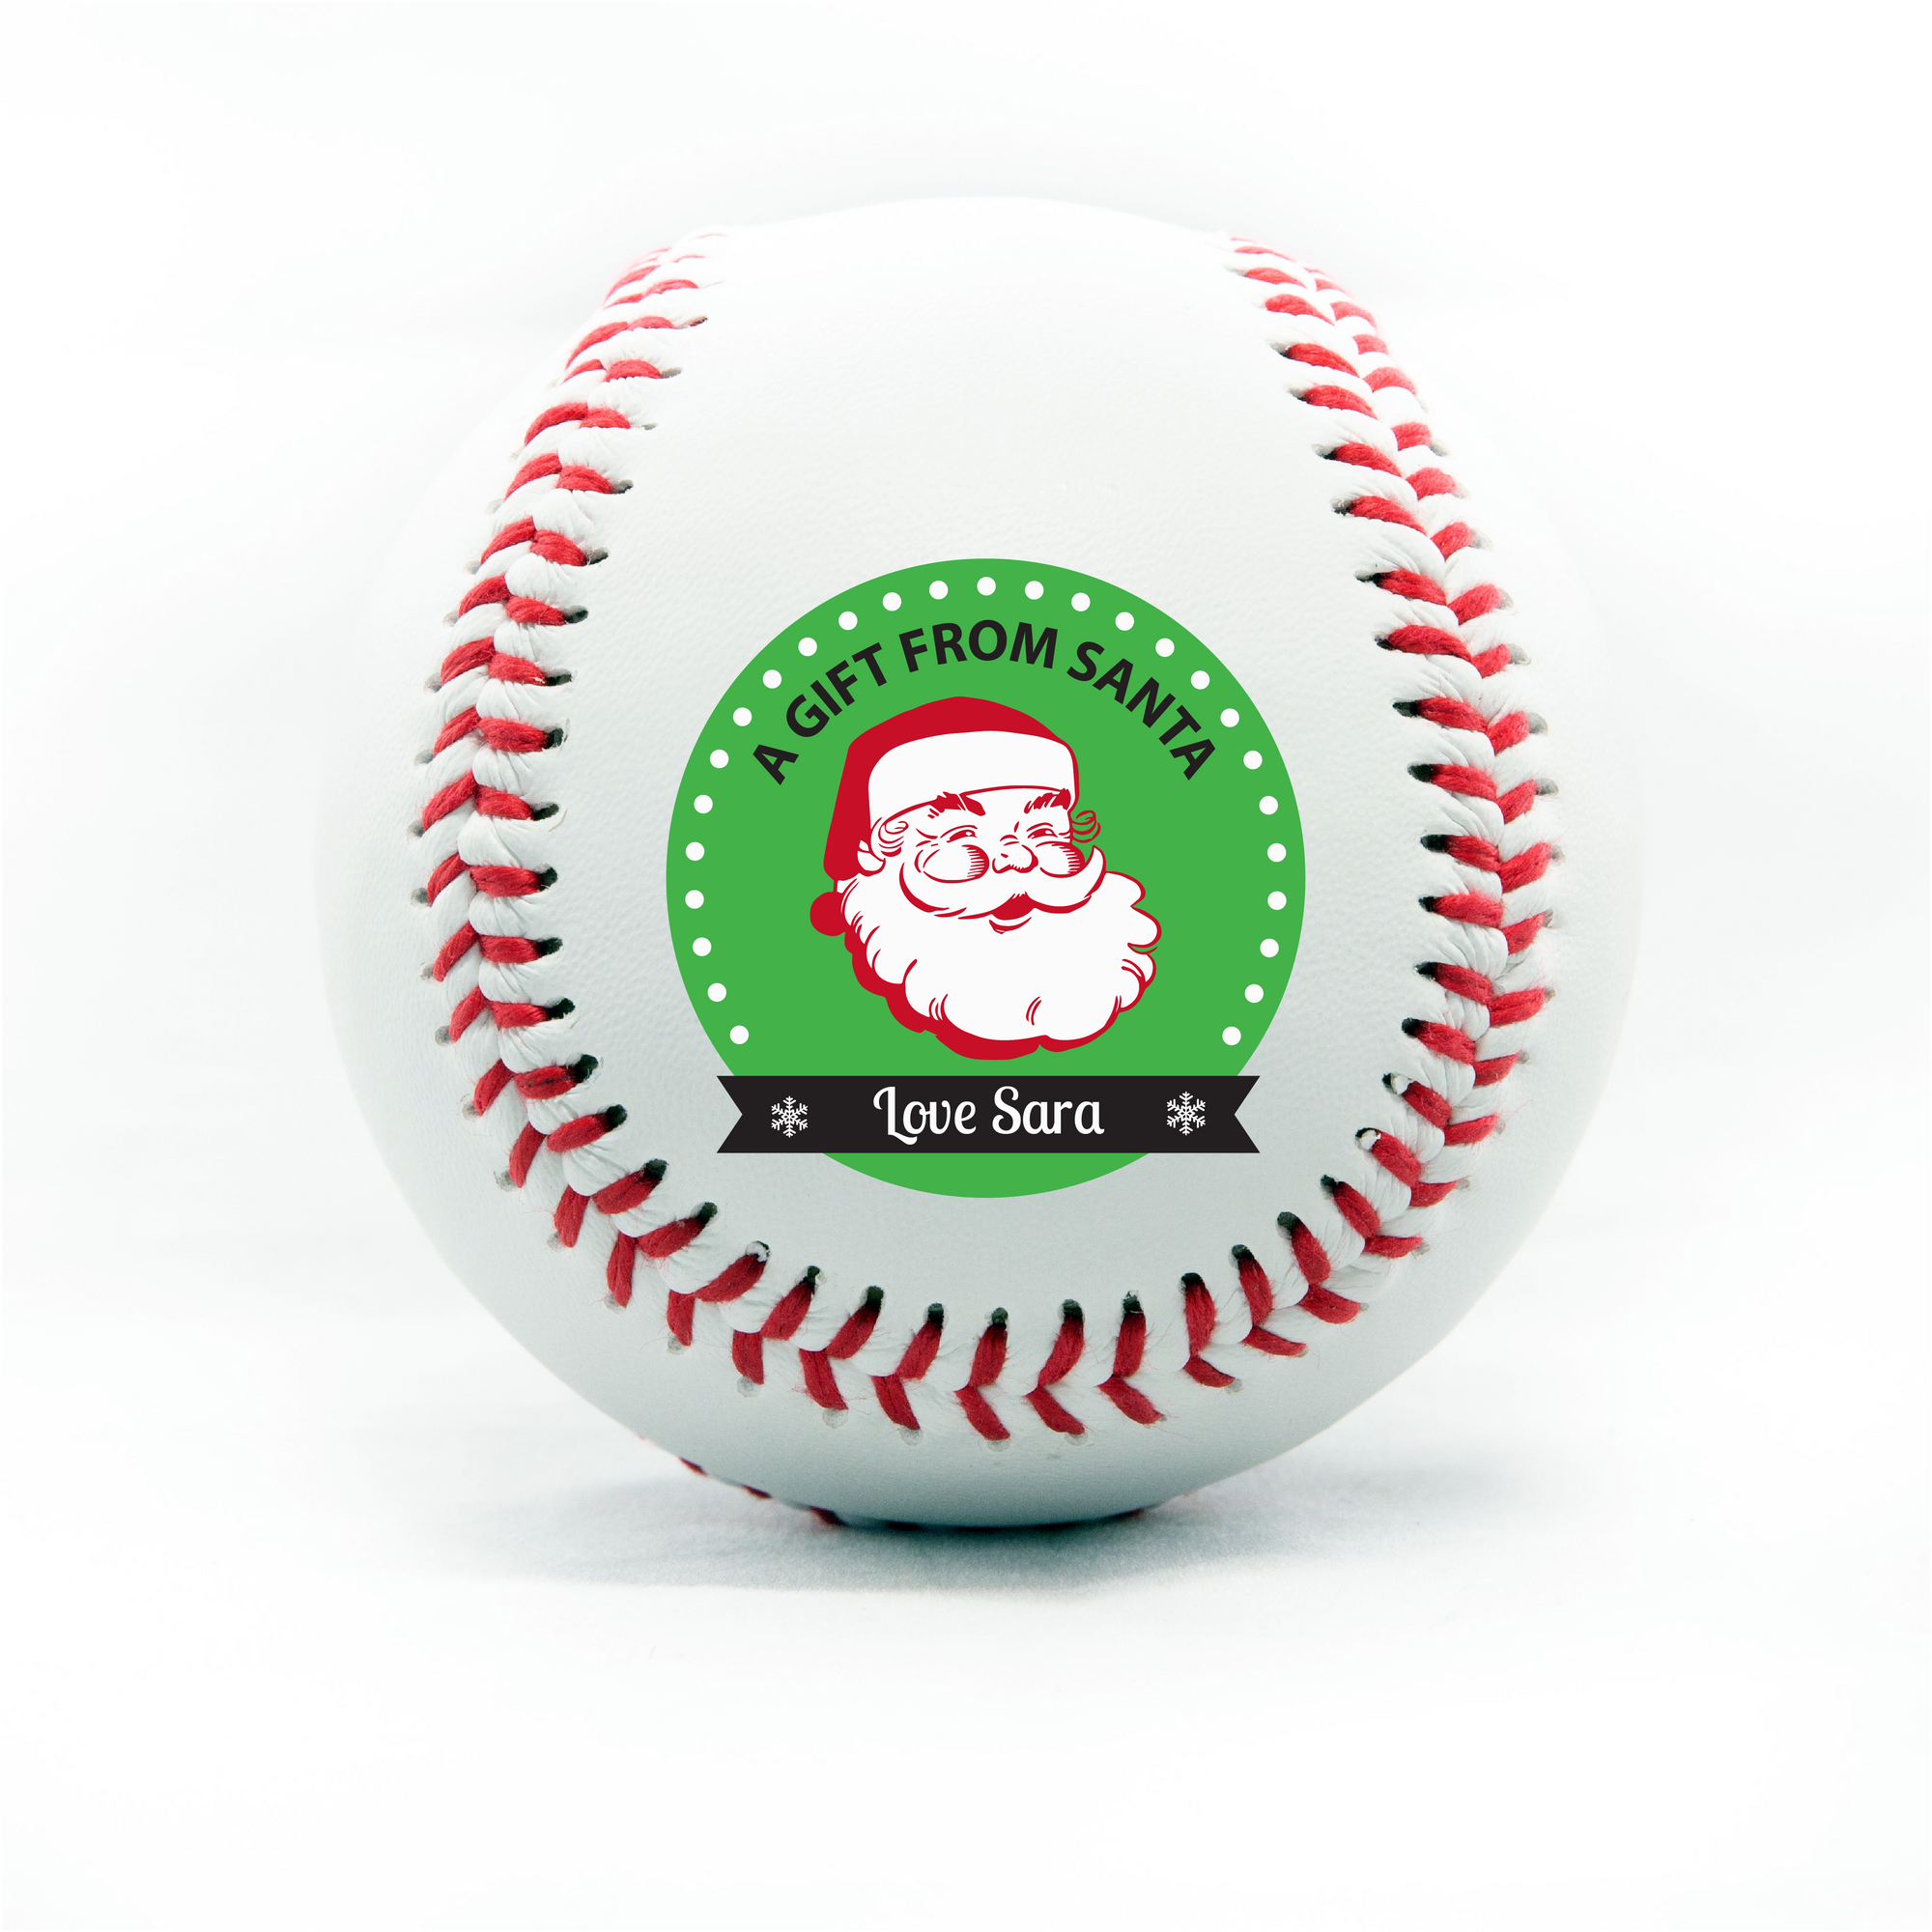 Merry Christmas, Printed Baseball